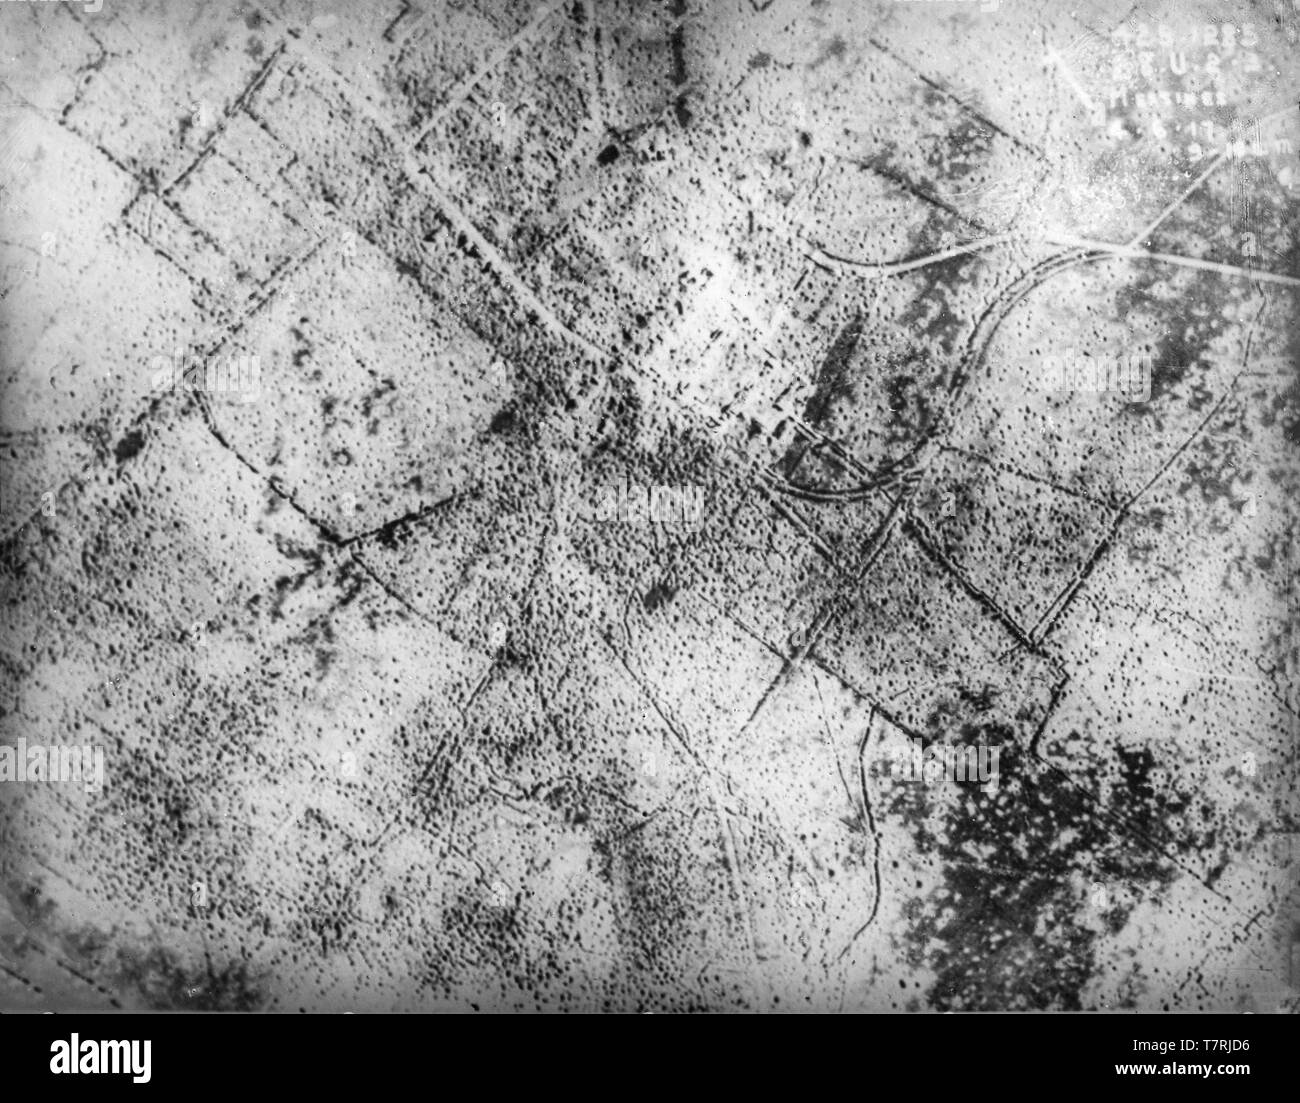 Modernen schwarzen und weißen britischen Foto von einem Flugzeug im Juni 1917 die Übernahme der belgischen Stadt Messiness, in der Nähe von Flandern. Foto zeigt deutlich die enormen Verwüstungen, die durch die riesigen Beschuss und Bombardierung von, was bekannt wurde als die Schlacht von MESSINESS. Luftkriegstoten Weltkrieg ein. Stockfoto